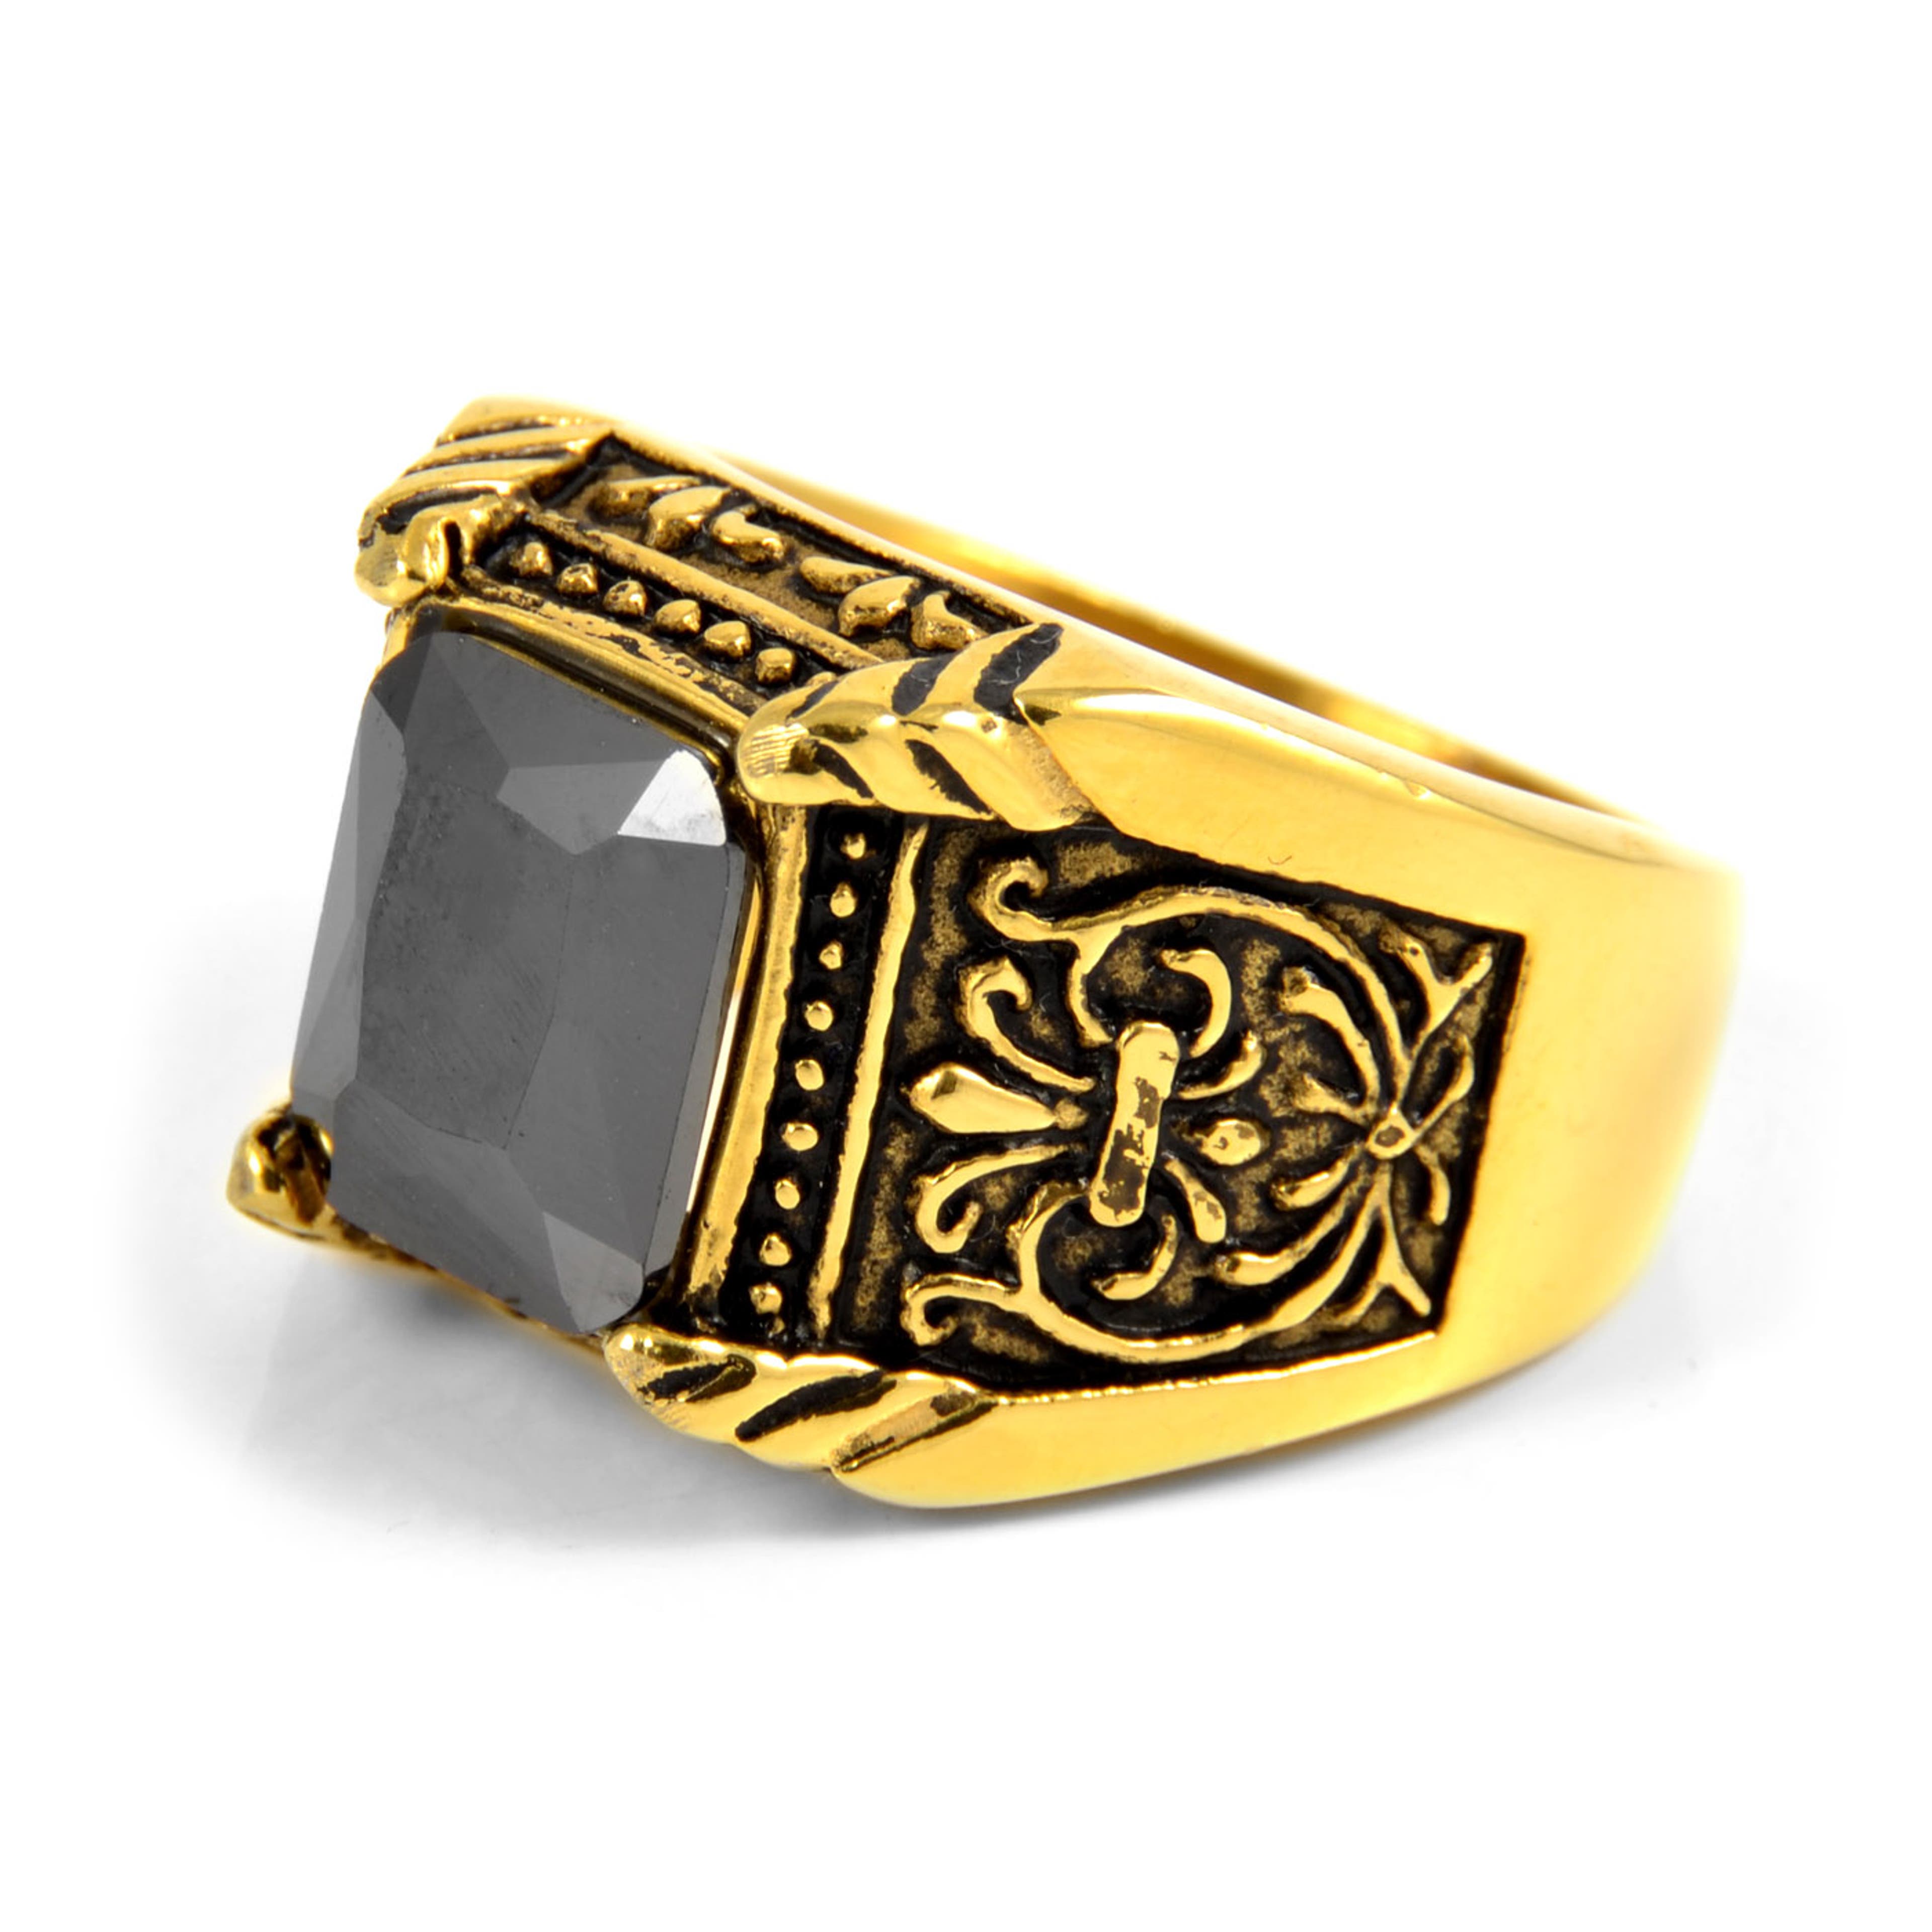 Stalowy grecki pierścień magnata w kolorze złota